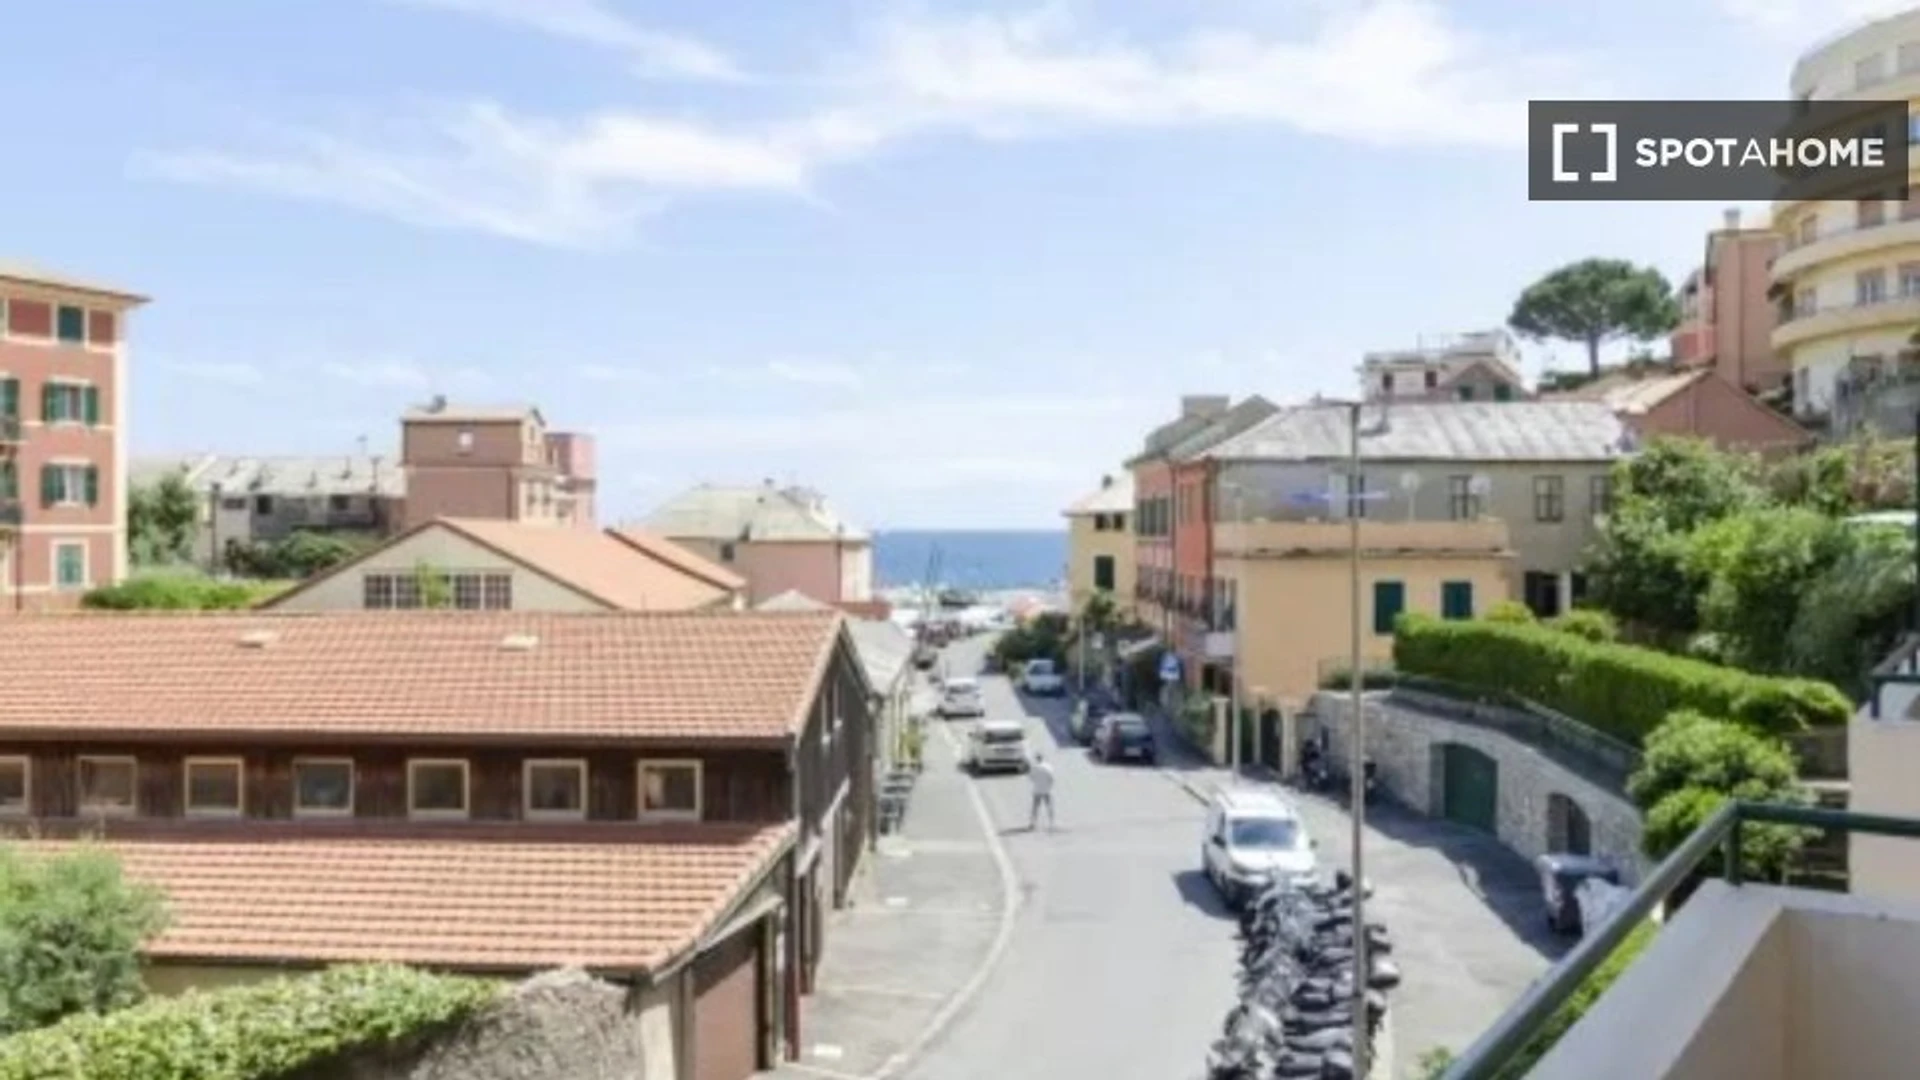 Logement situé dans le centre de Gênes